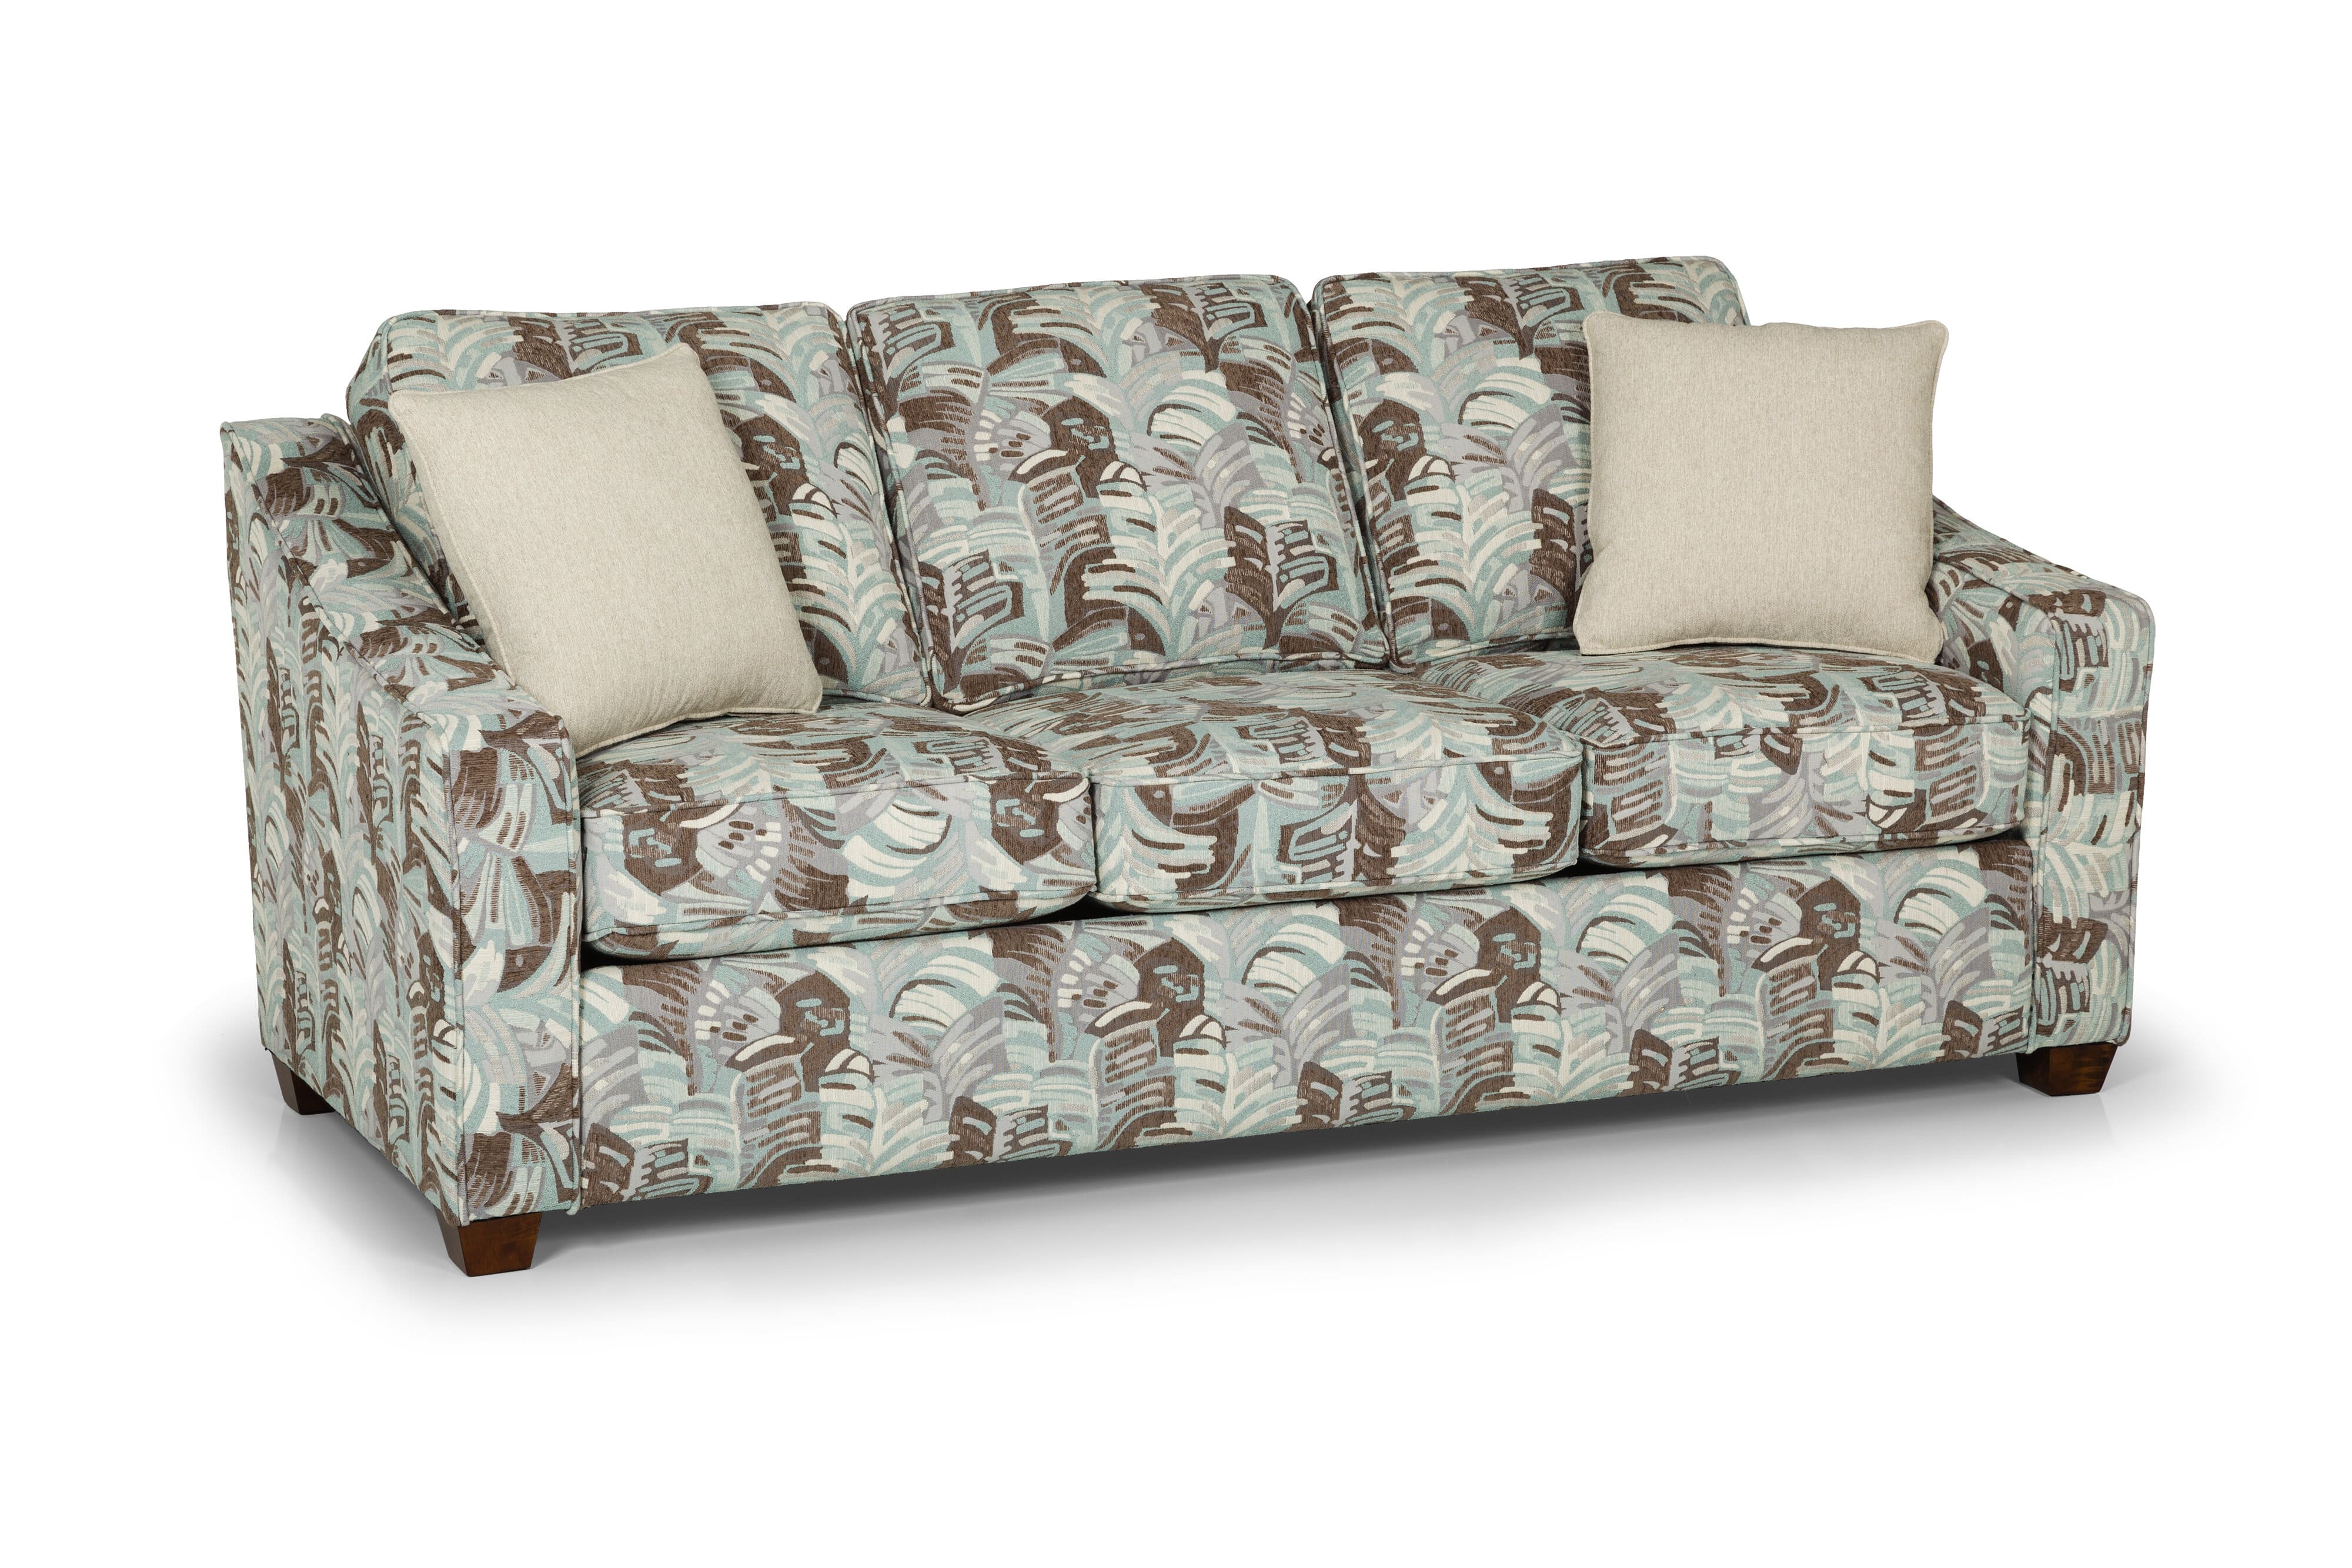 496 Sleeper Sofa